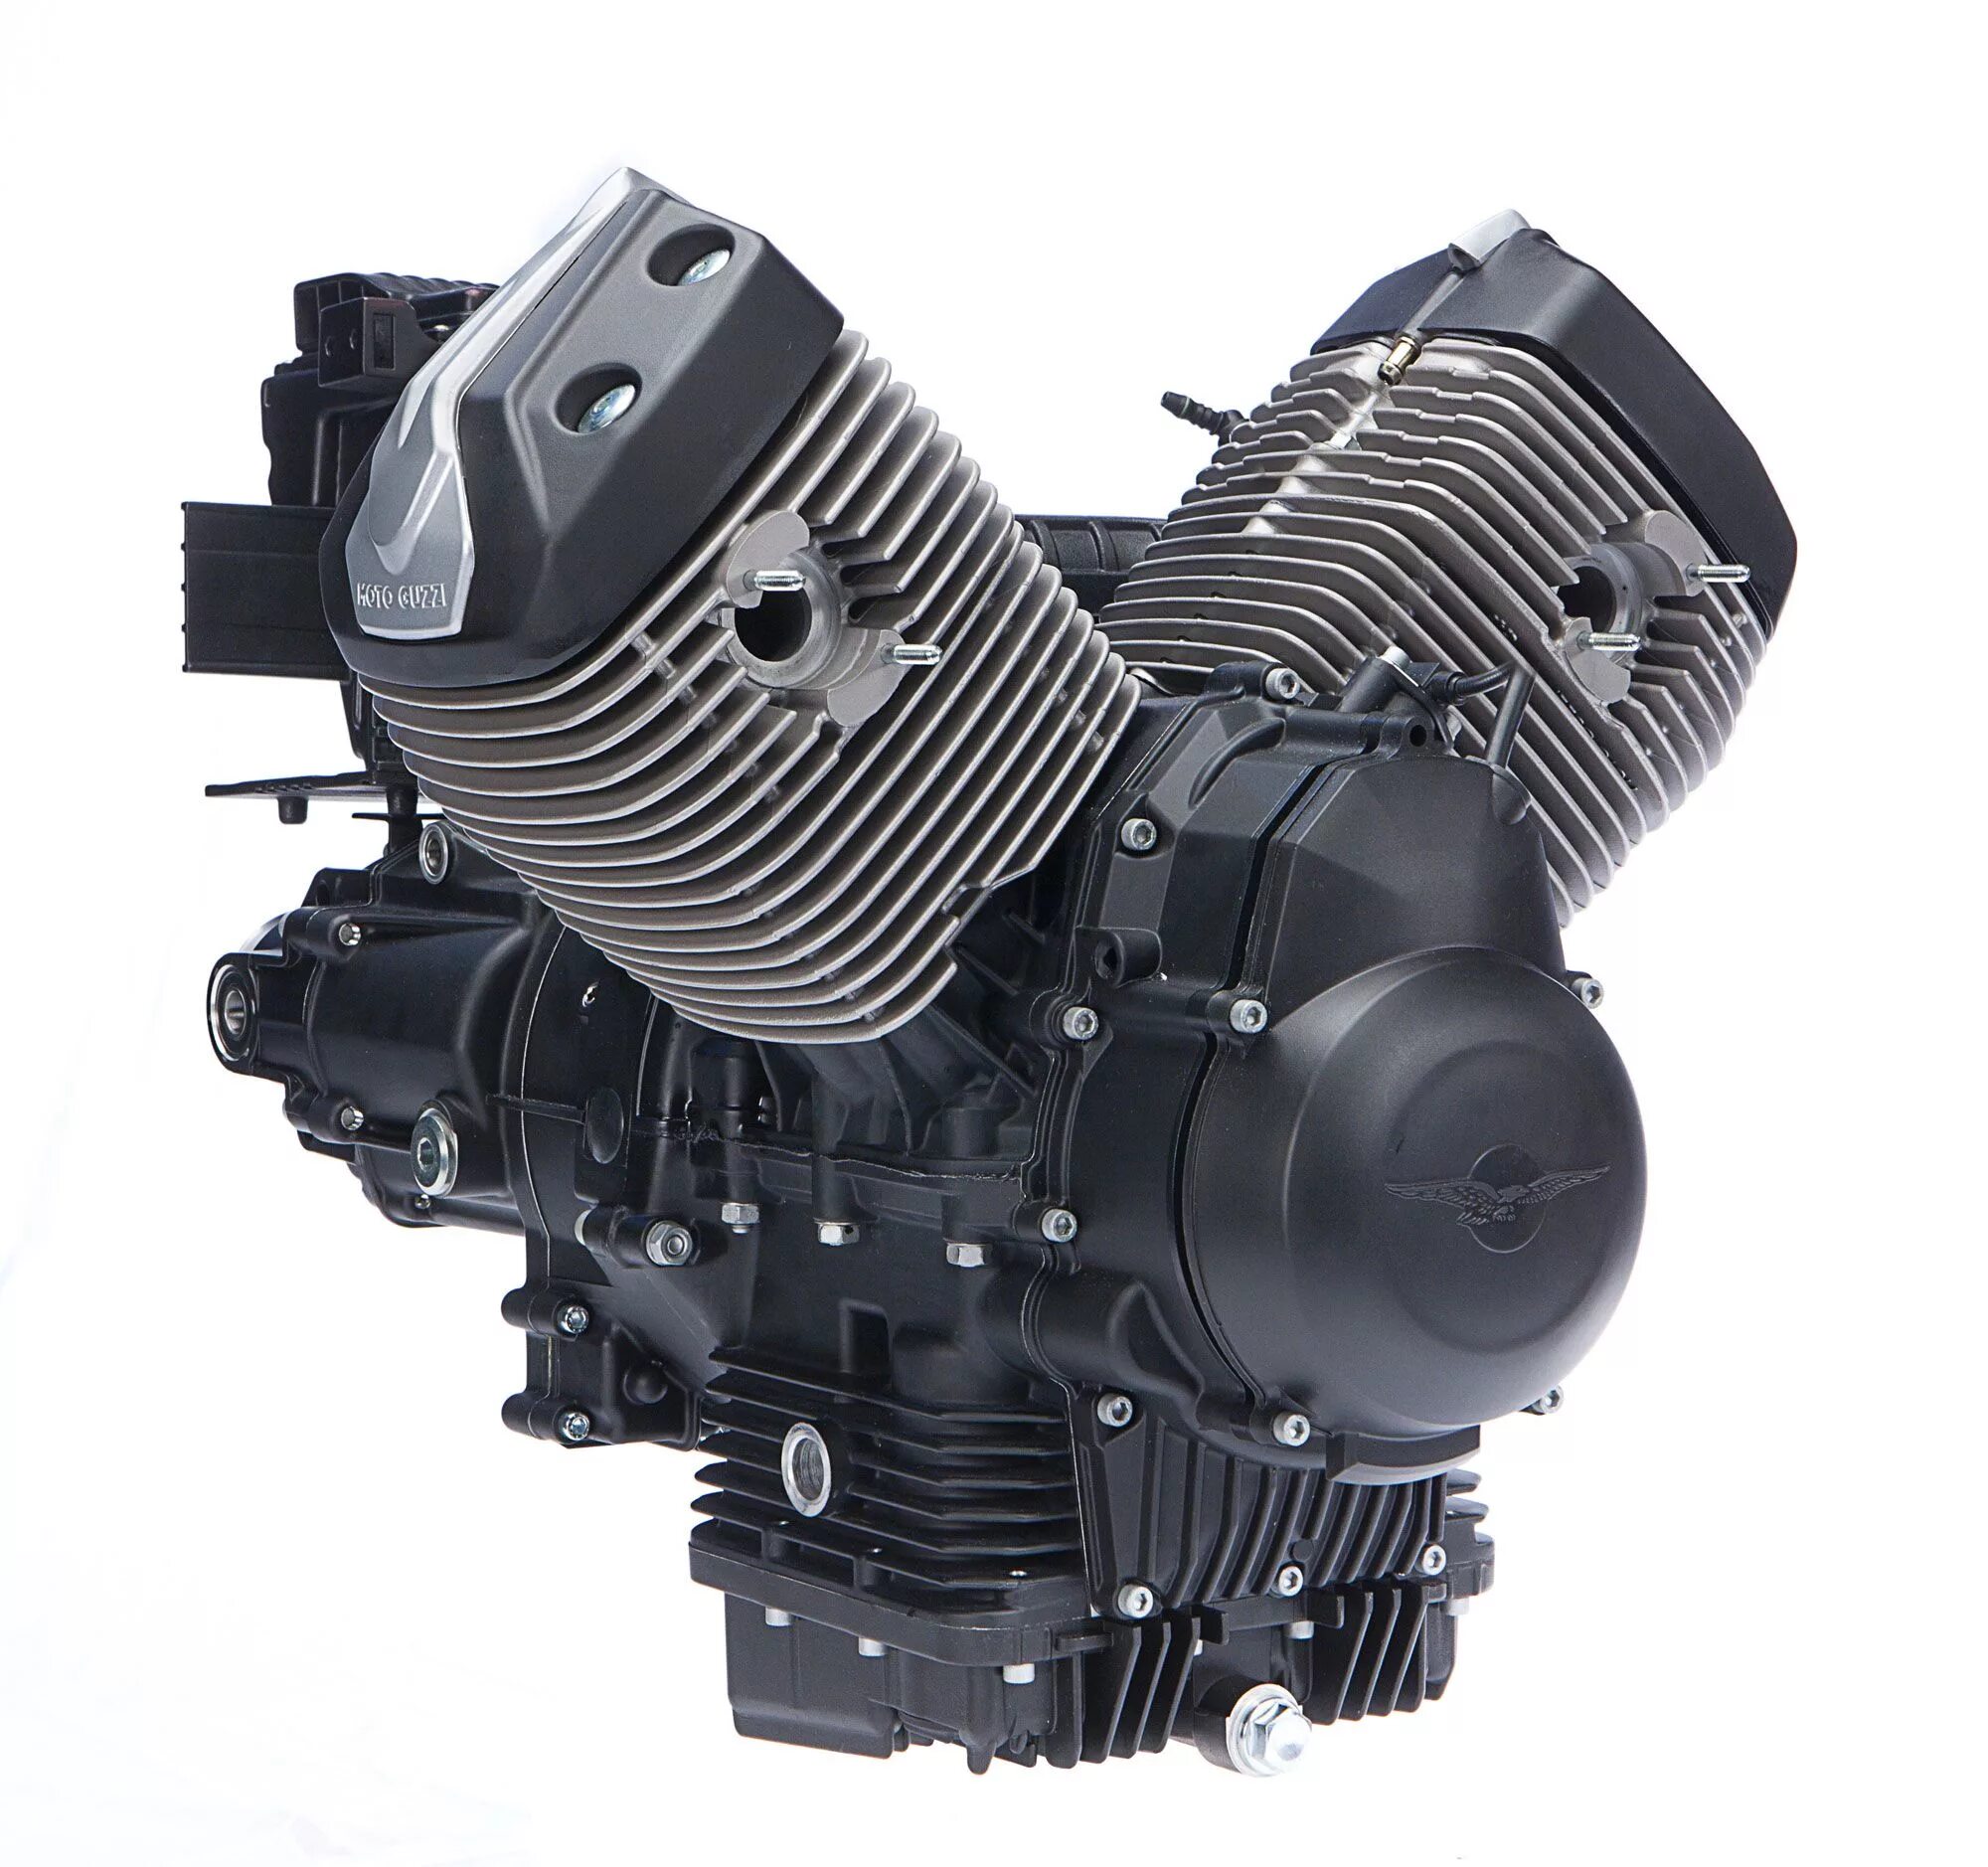 Купить моторное для мотоцикла. Moto Guzzi 750 двигатель. Moto Guzzi двигатель. Мотодвигатель v4. Moto Guzzi трехцилиндровый.